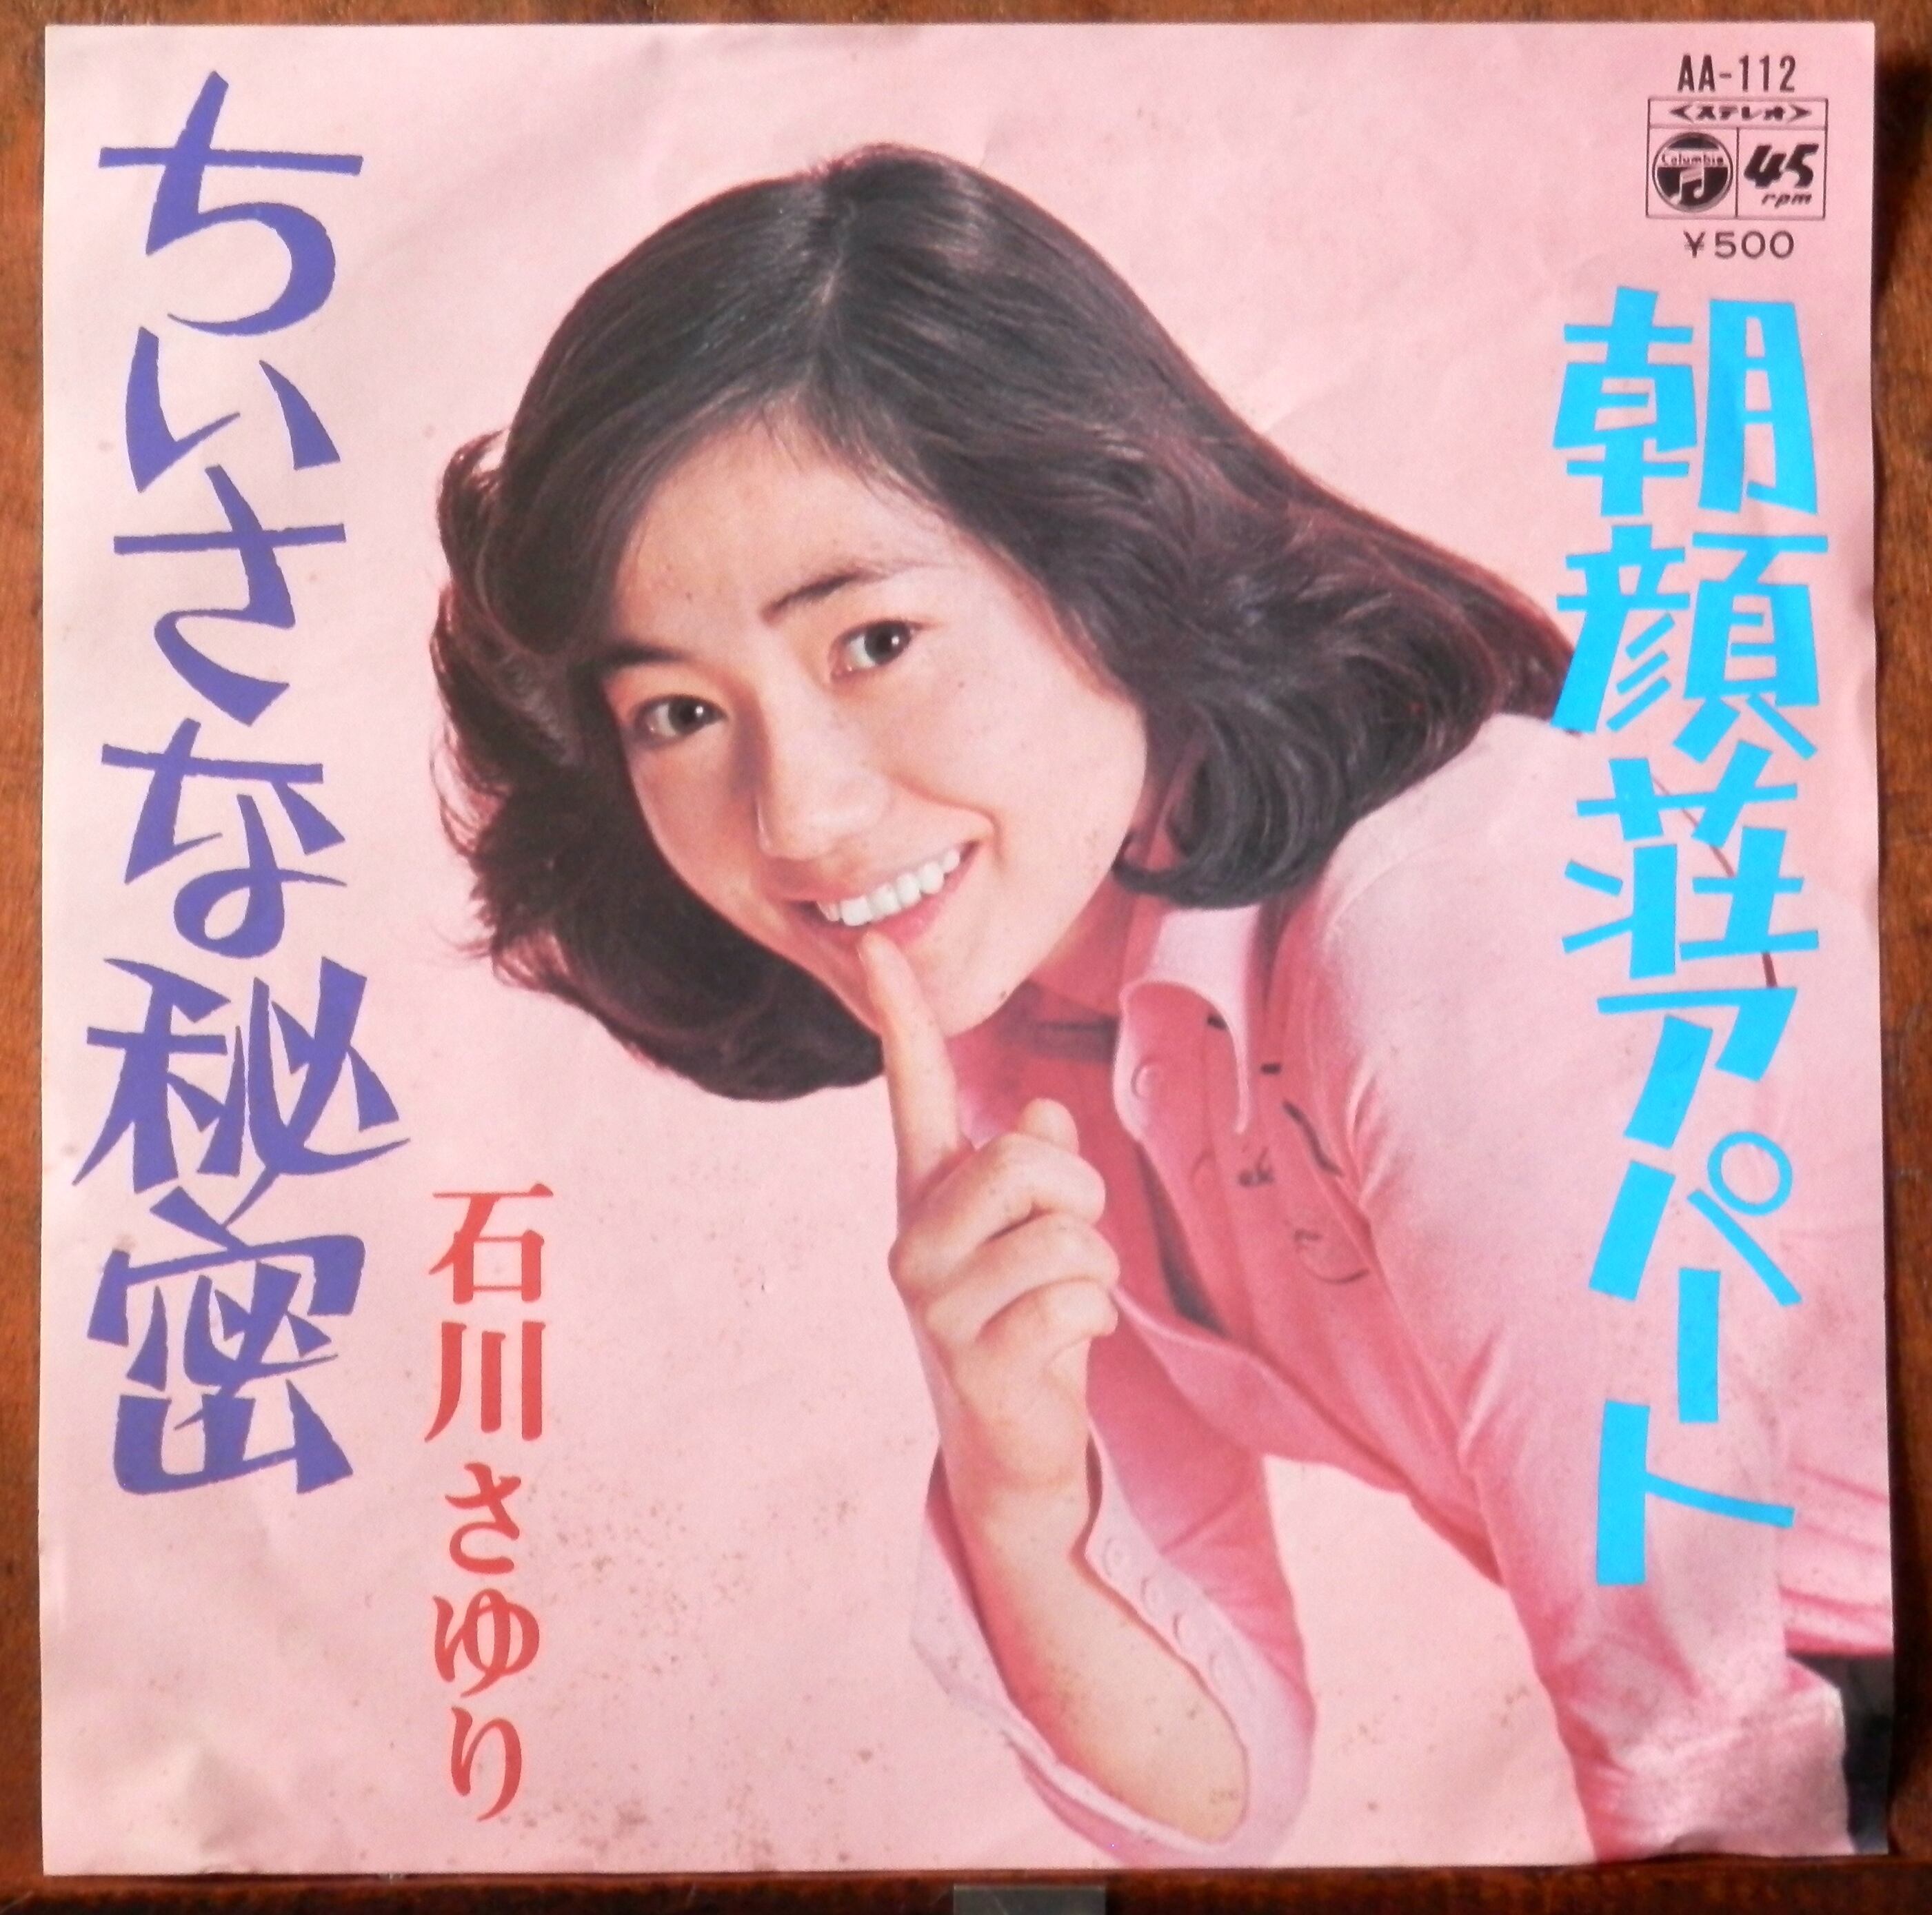 '75【EP】石川さゆり ちいさな秘密 音盤窟レコード